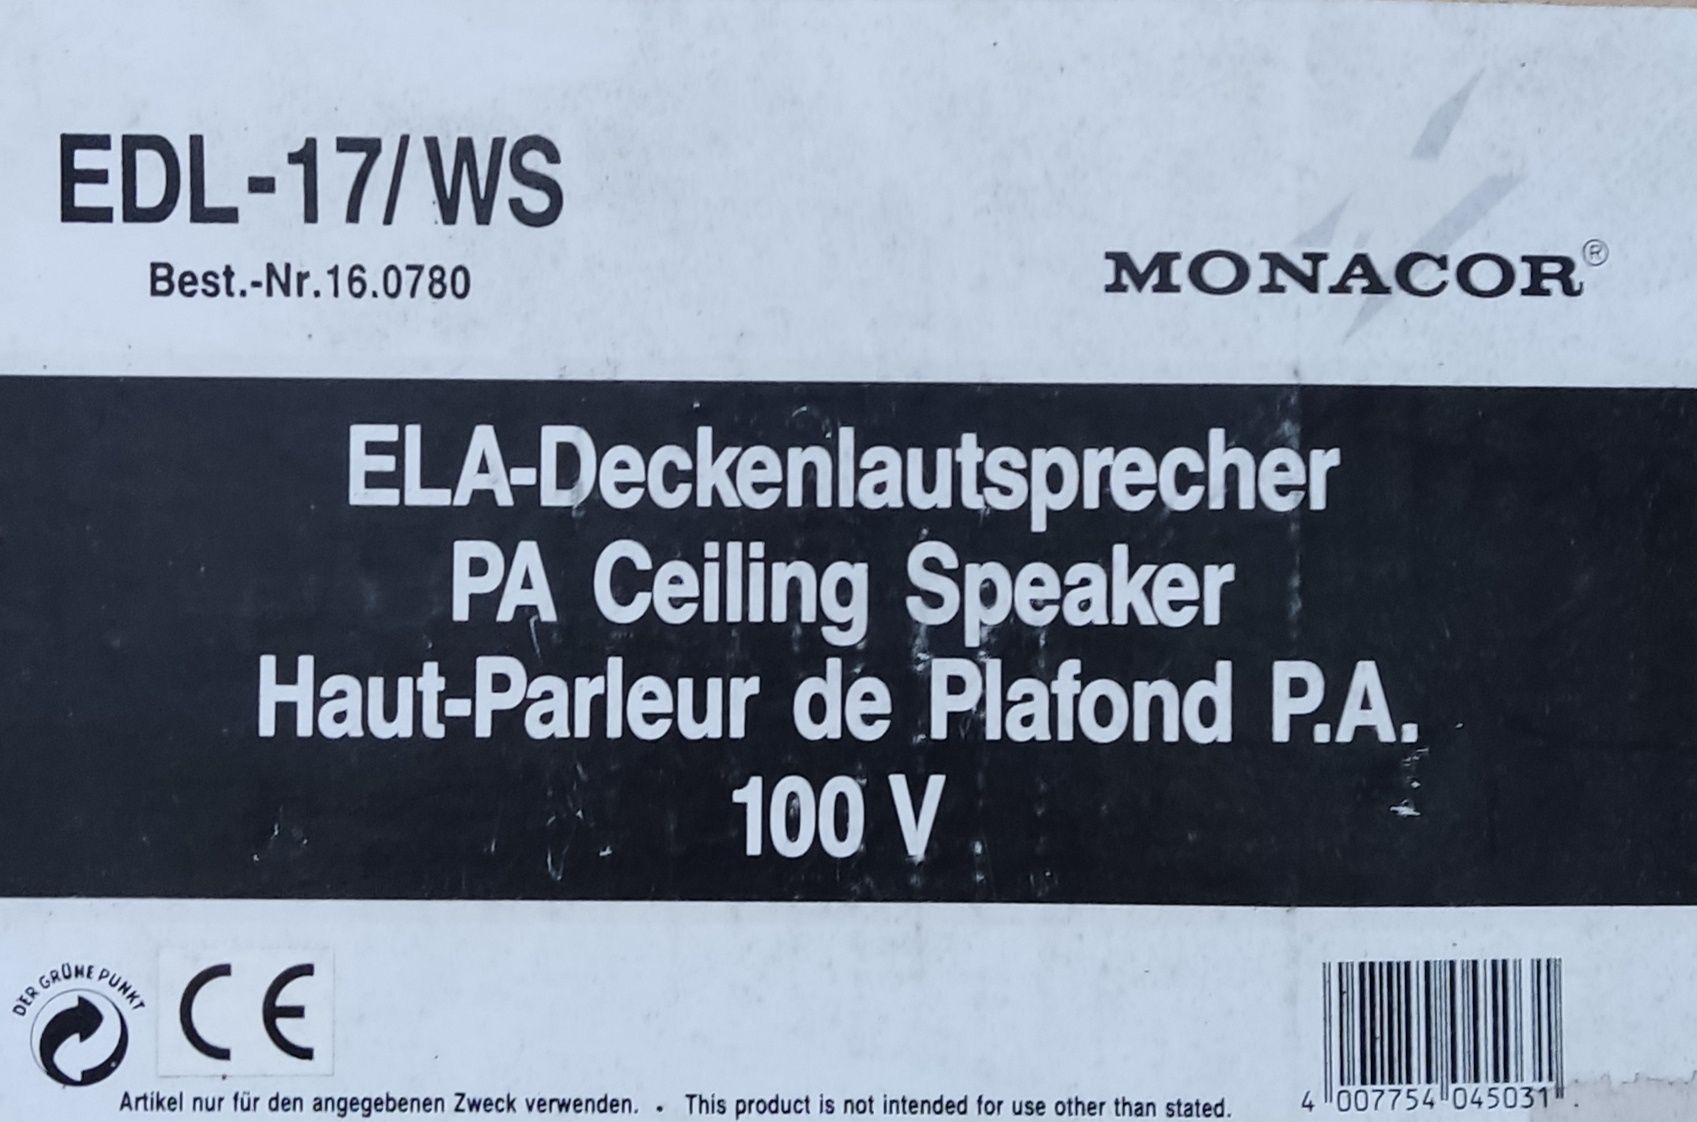 Monacor EDL-17/WS

Głośnik sufitowy PA nowy